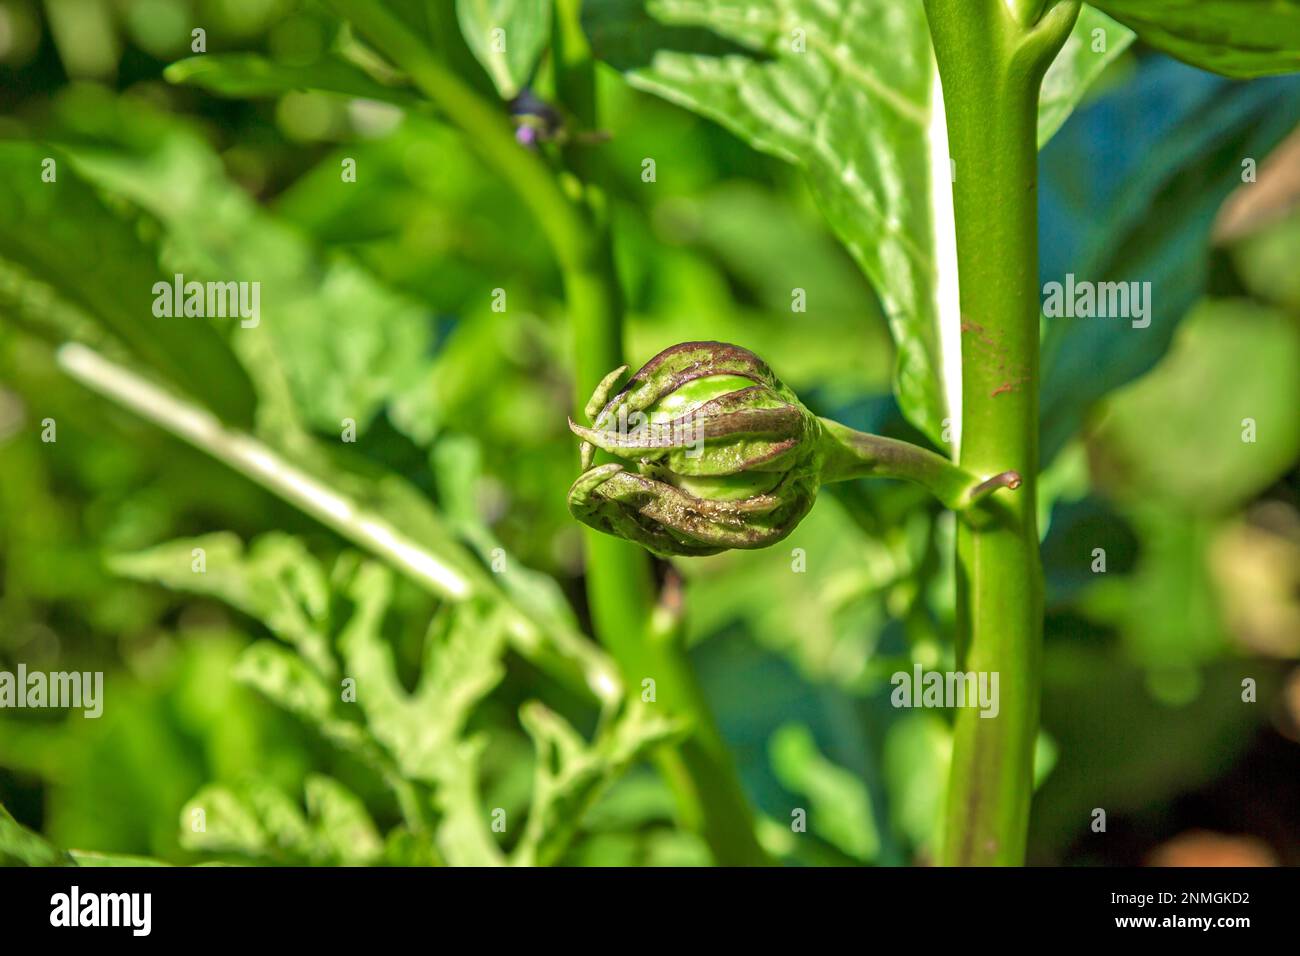 Frisch wachsende thailändische Erbsen-Auberginen (Erbsen-Aubergine), auch bekannt als runde thailändische Auberginen Stockfoto